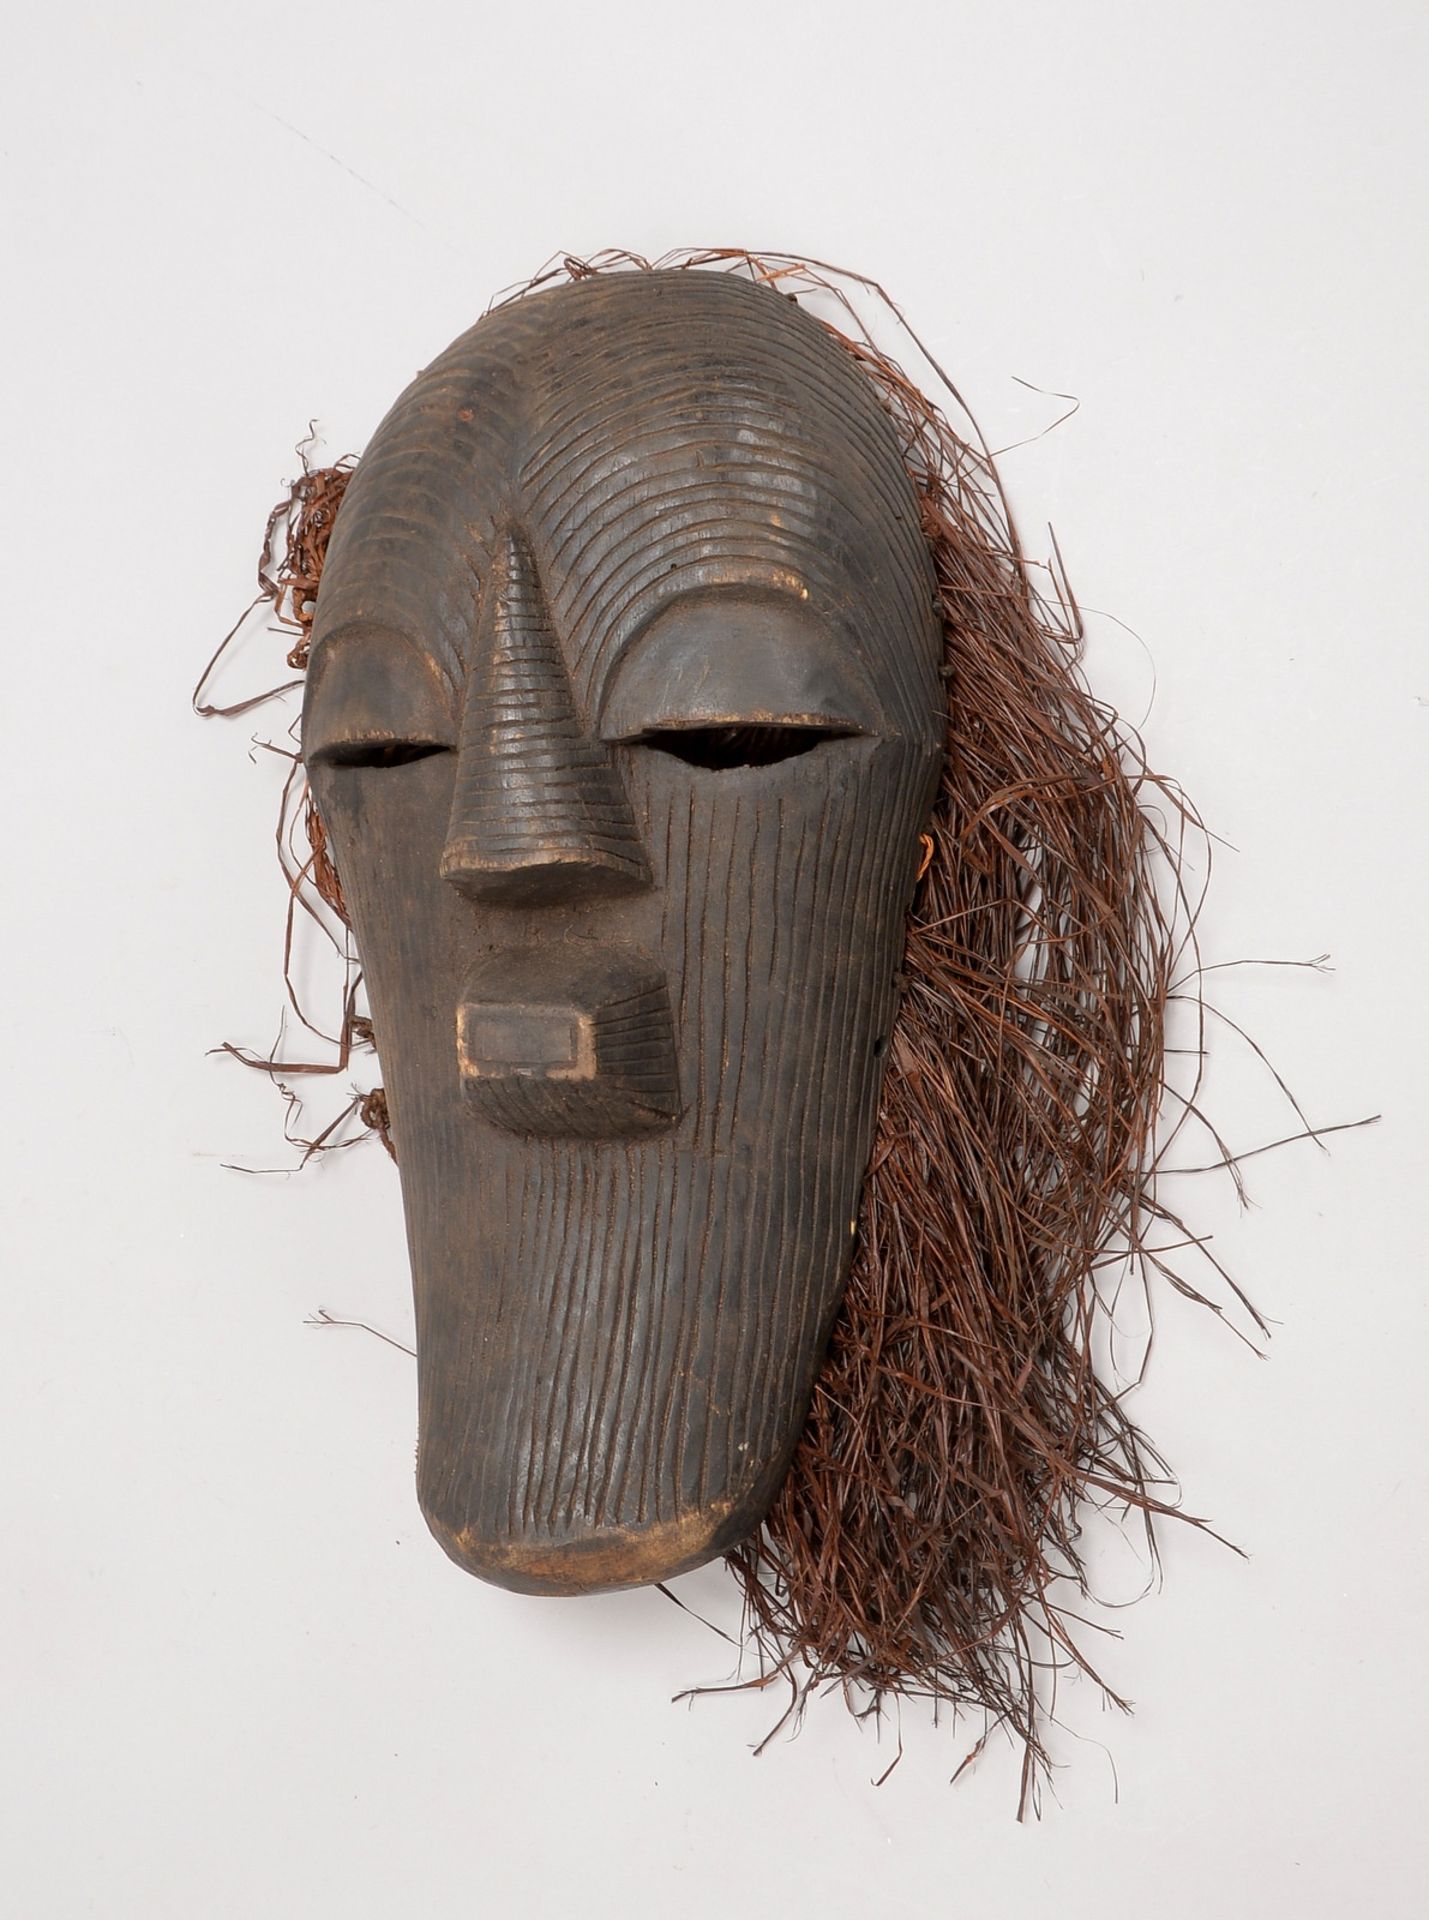 Ritualmaske, Holz geschnitzt, längl. Form, mit Rillenstruktur und Bast-Haaren